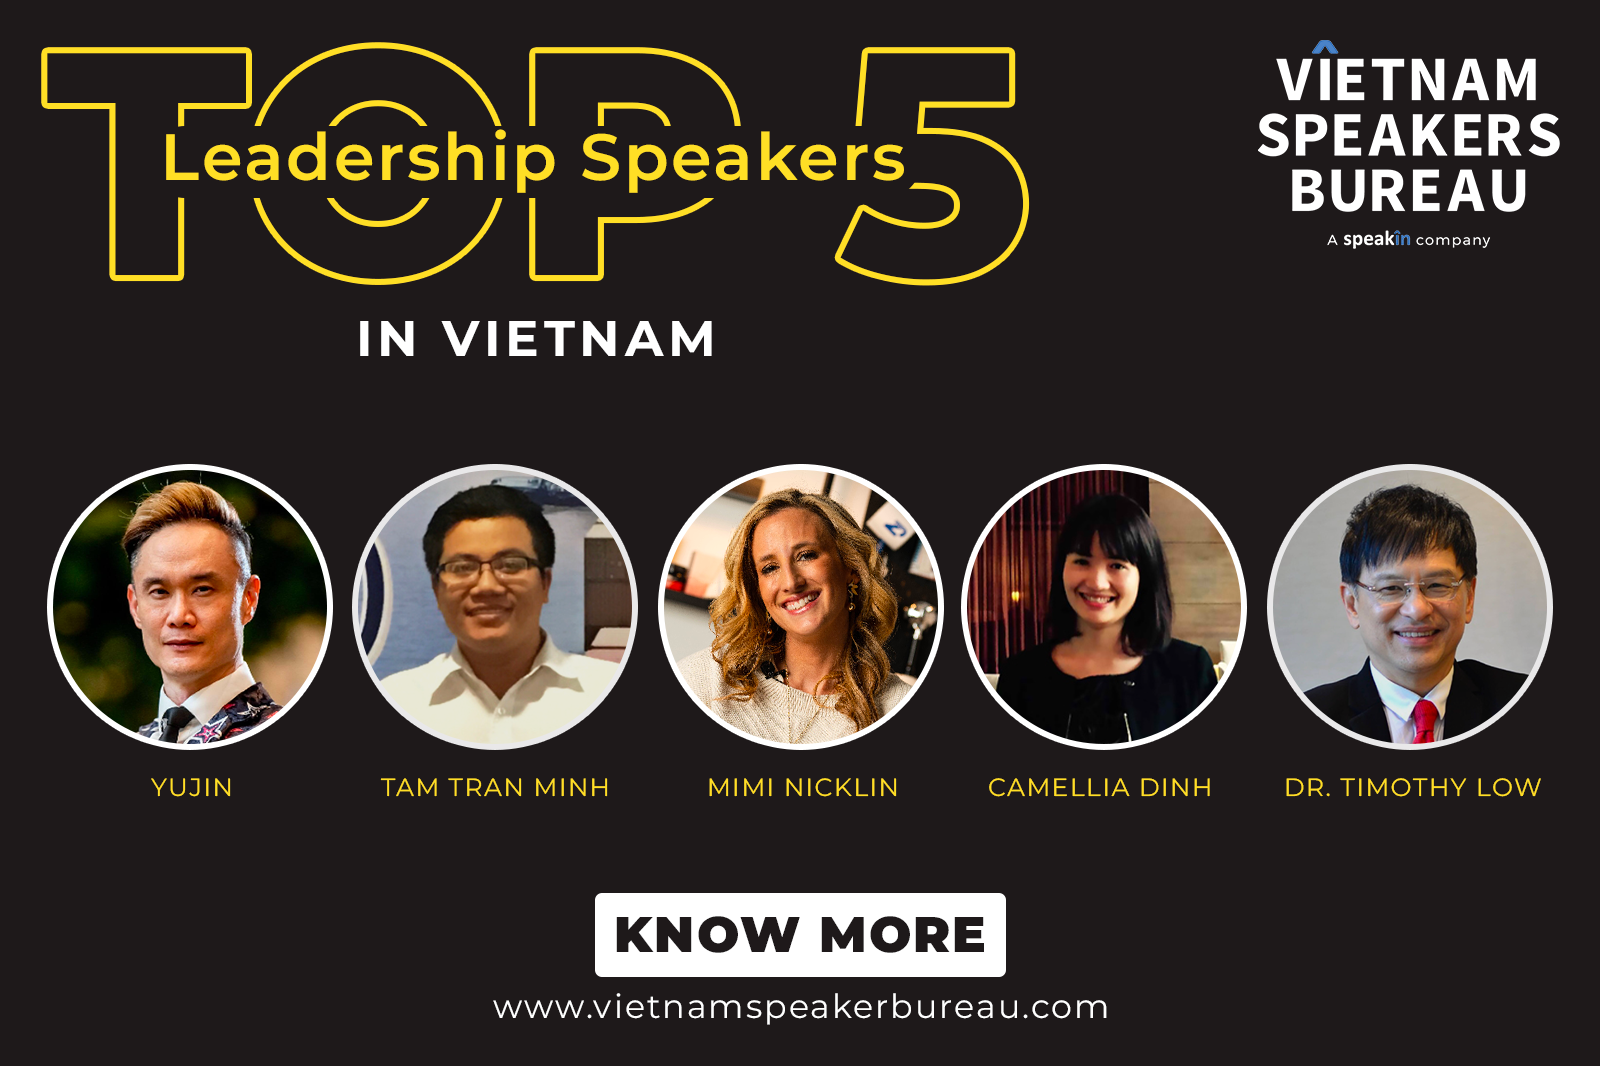 Top 5 Leadership Speakers in Vietnam